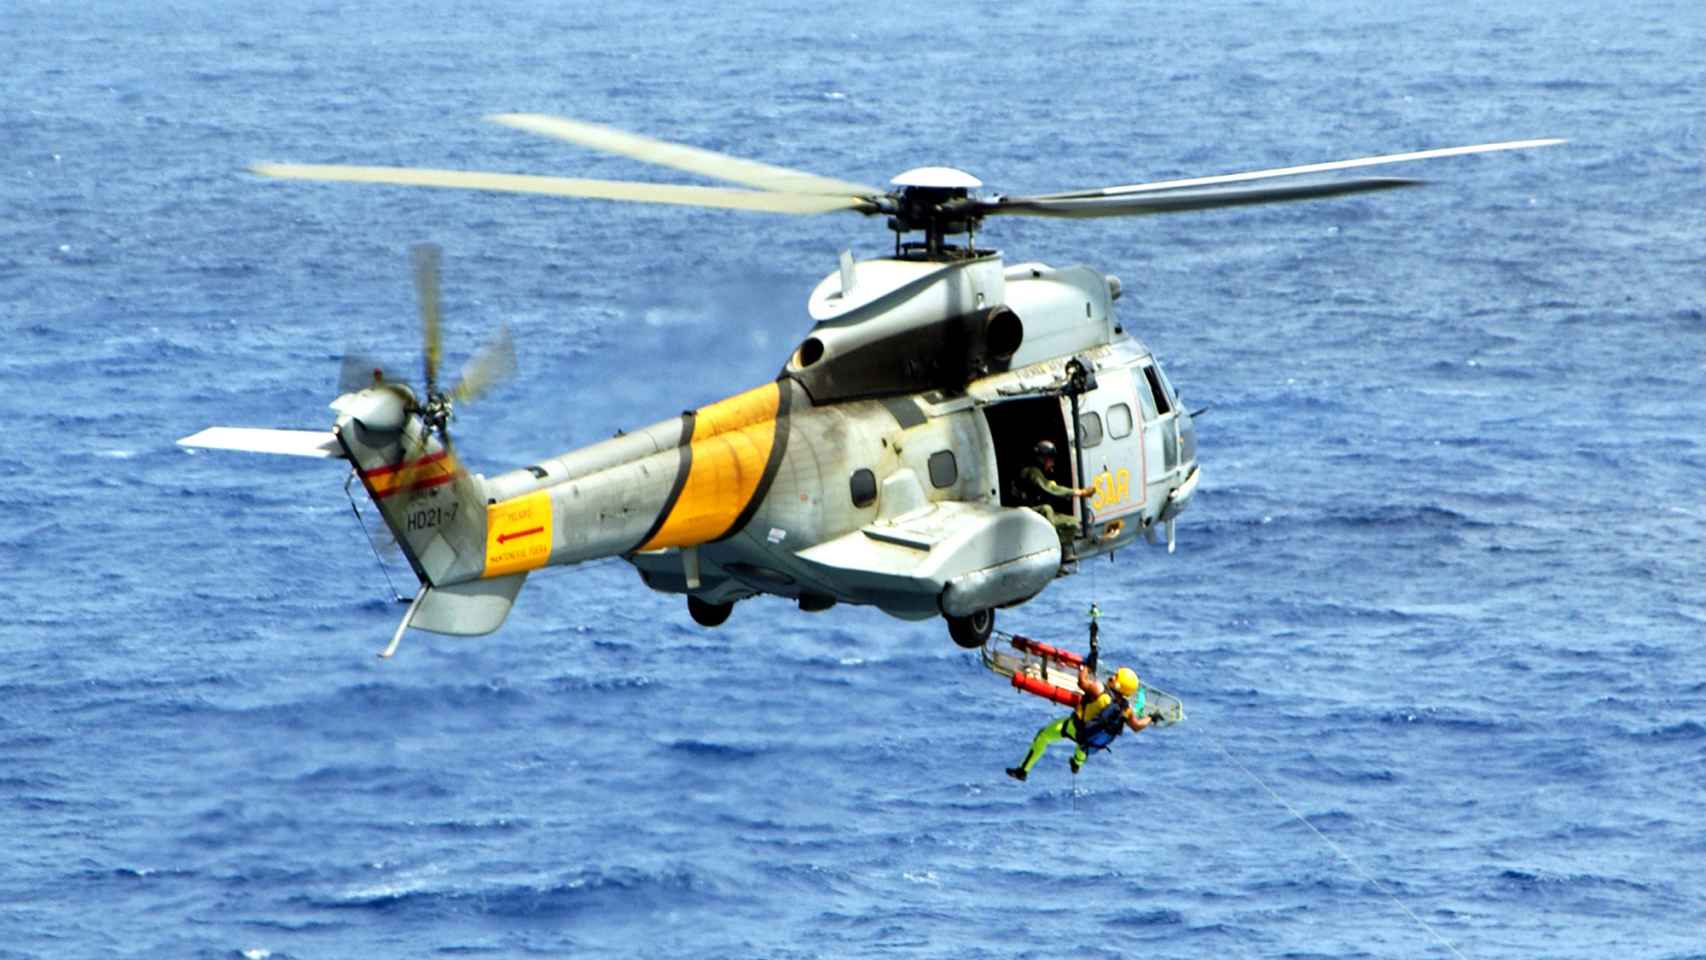 Helicóptero del 802 escuadrón del Ejército del Aire, el mismo que el accidentado.